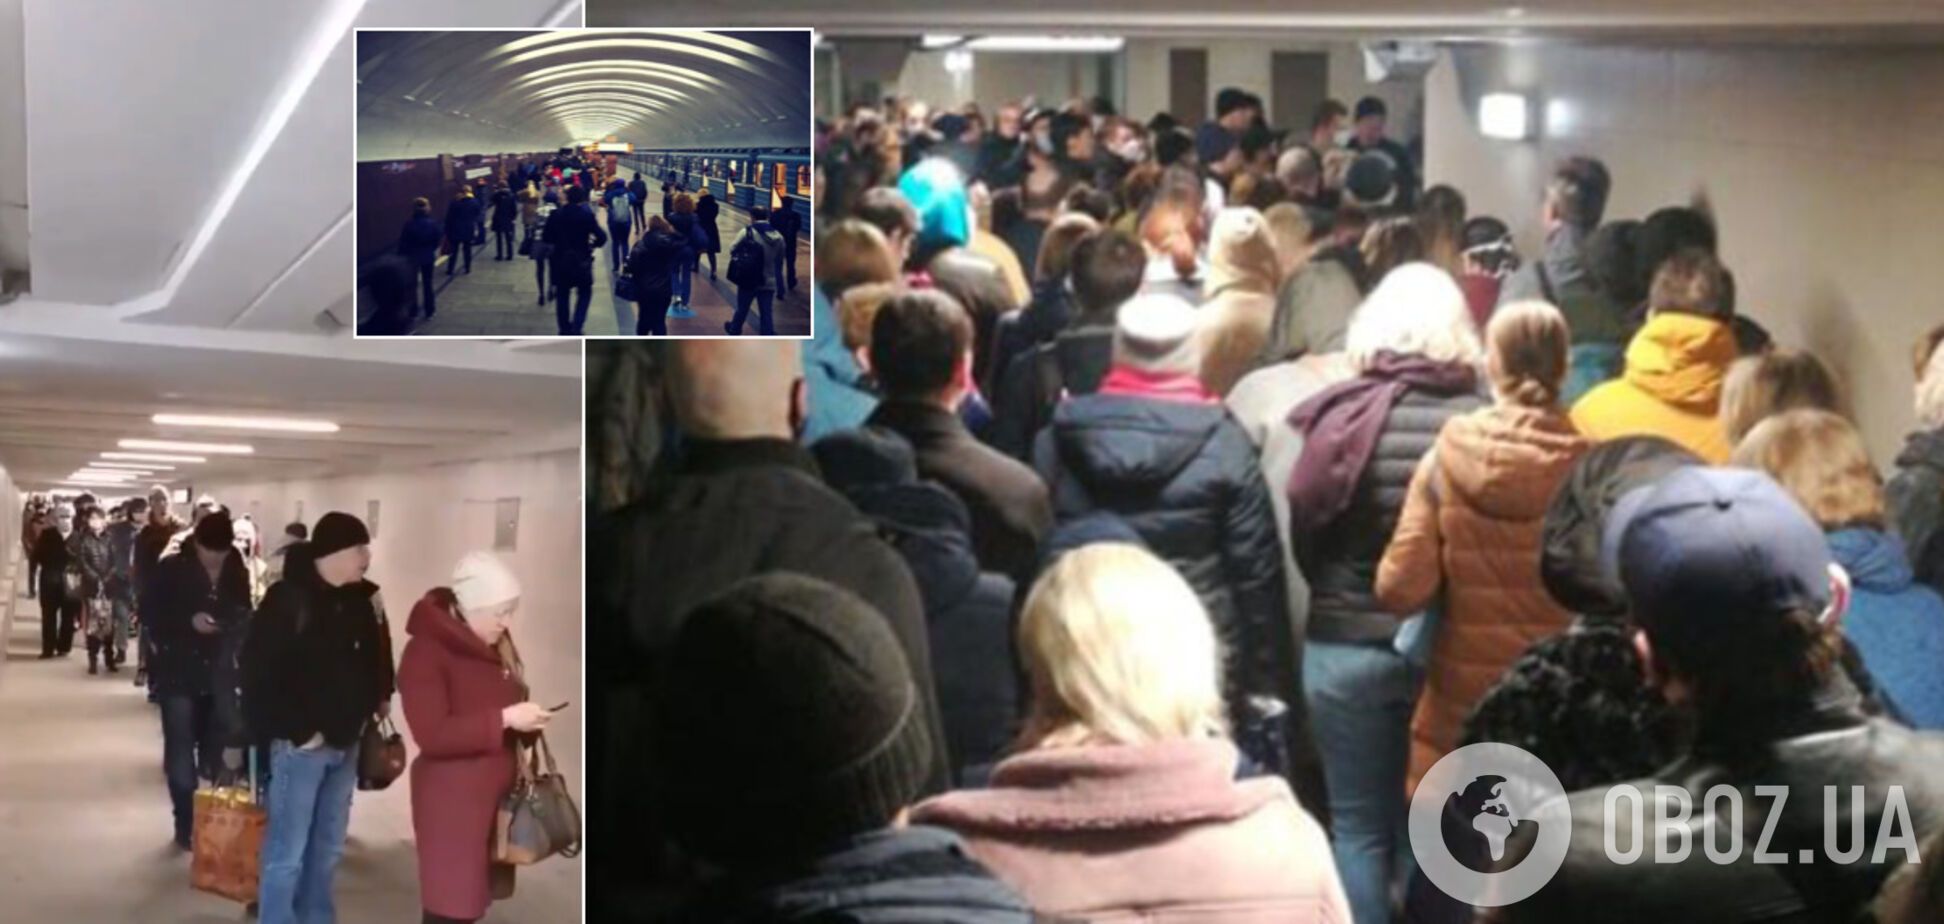 Пекло в метро Москви у пік коронавірусу: кадри масової тисняви розбурхали мережу